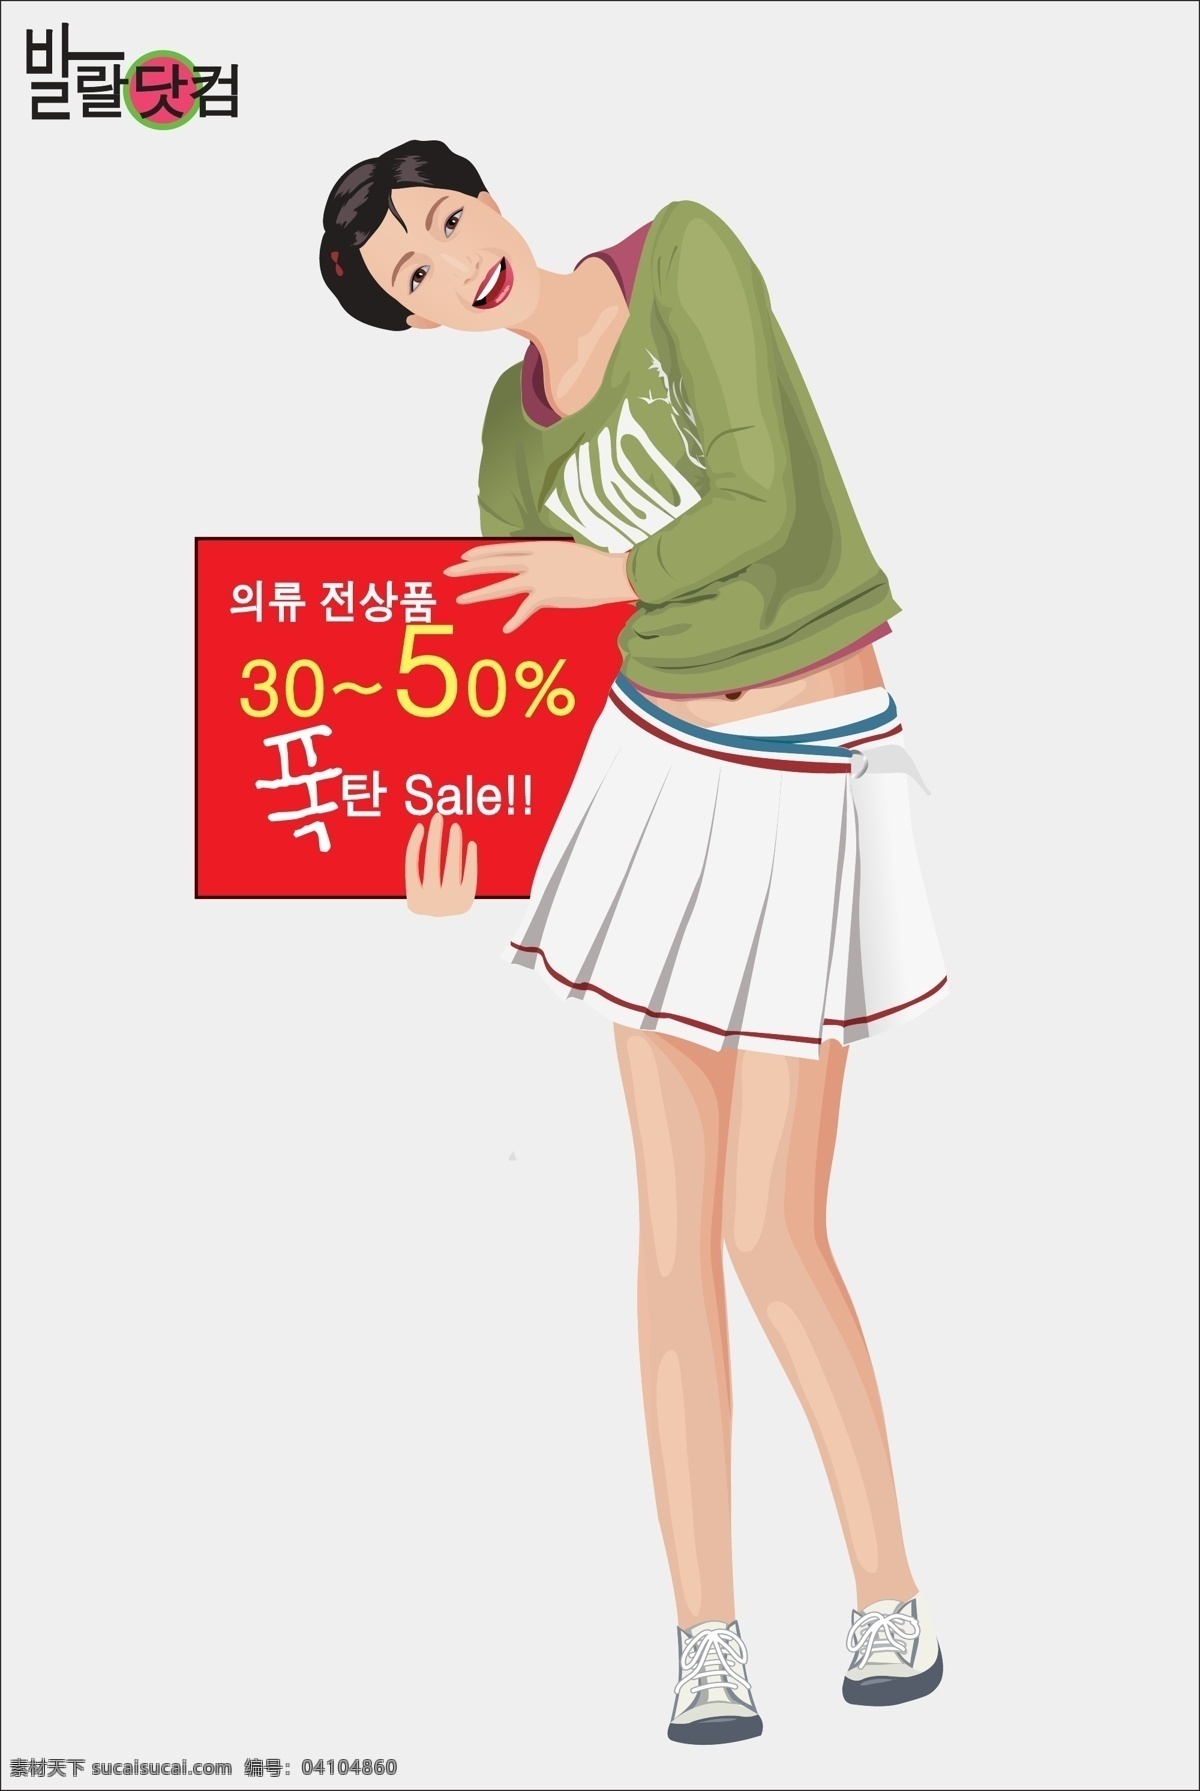 高精 写实 矢量 人物 短发 韩国素材 美女 女孩 女人 微笑 站姿 手 告示牌 销售人物 韩国 矢量图